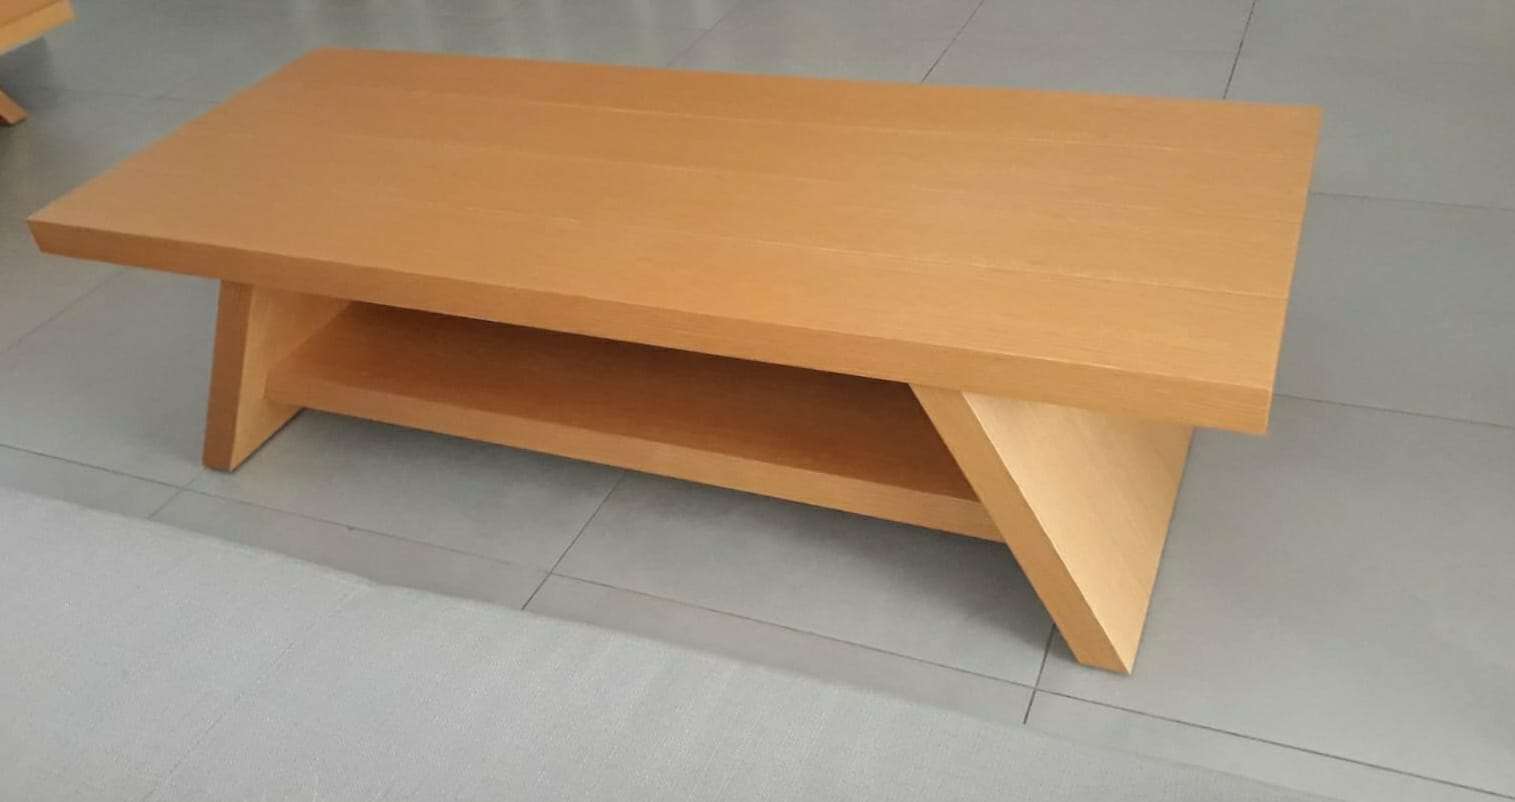 שולחן סלון מעוצב